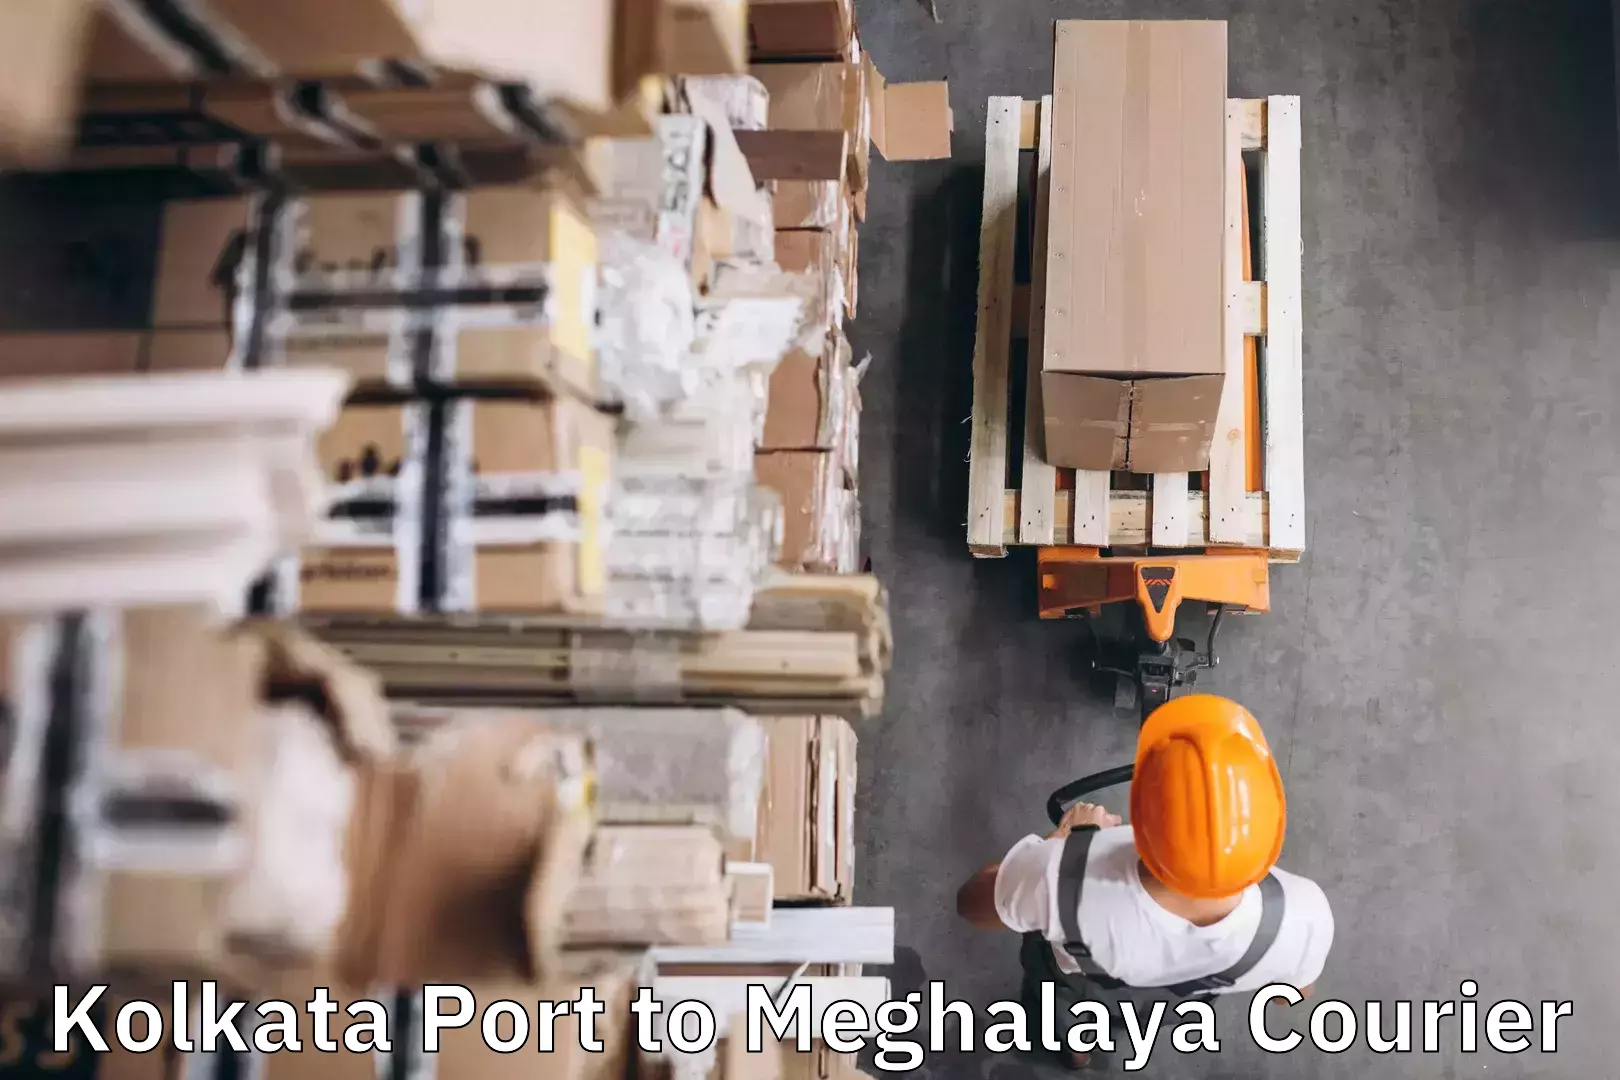 Overnight luggage courier Kolkata Port to Meghalaya